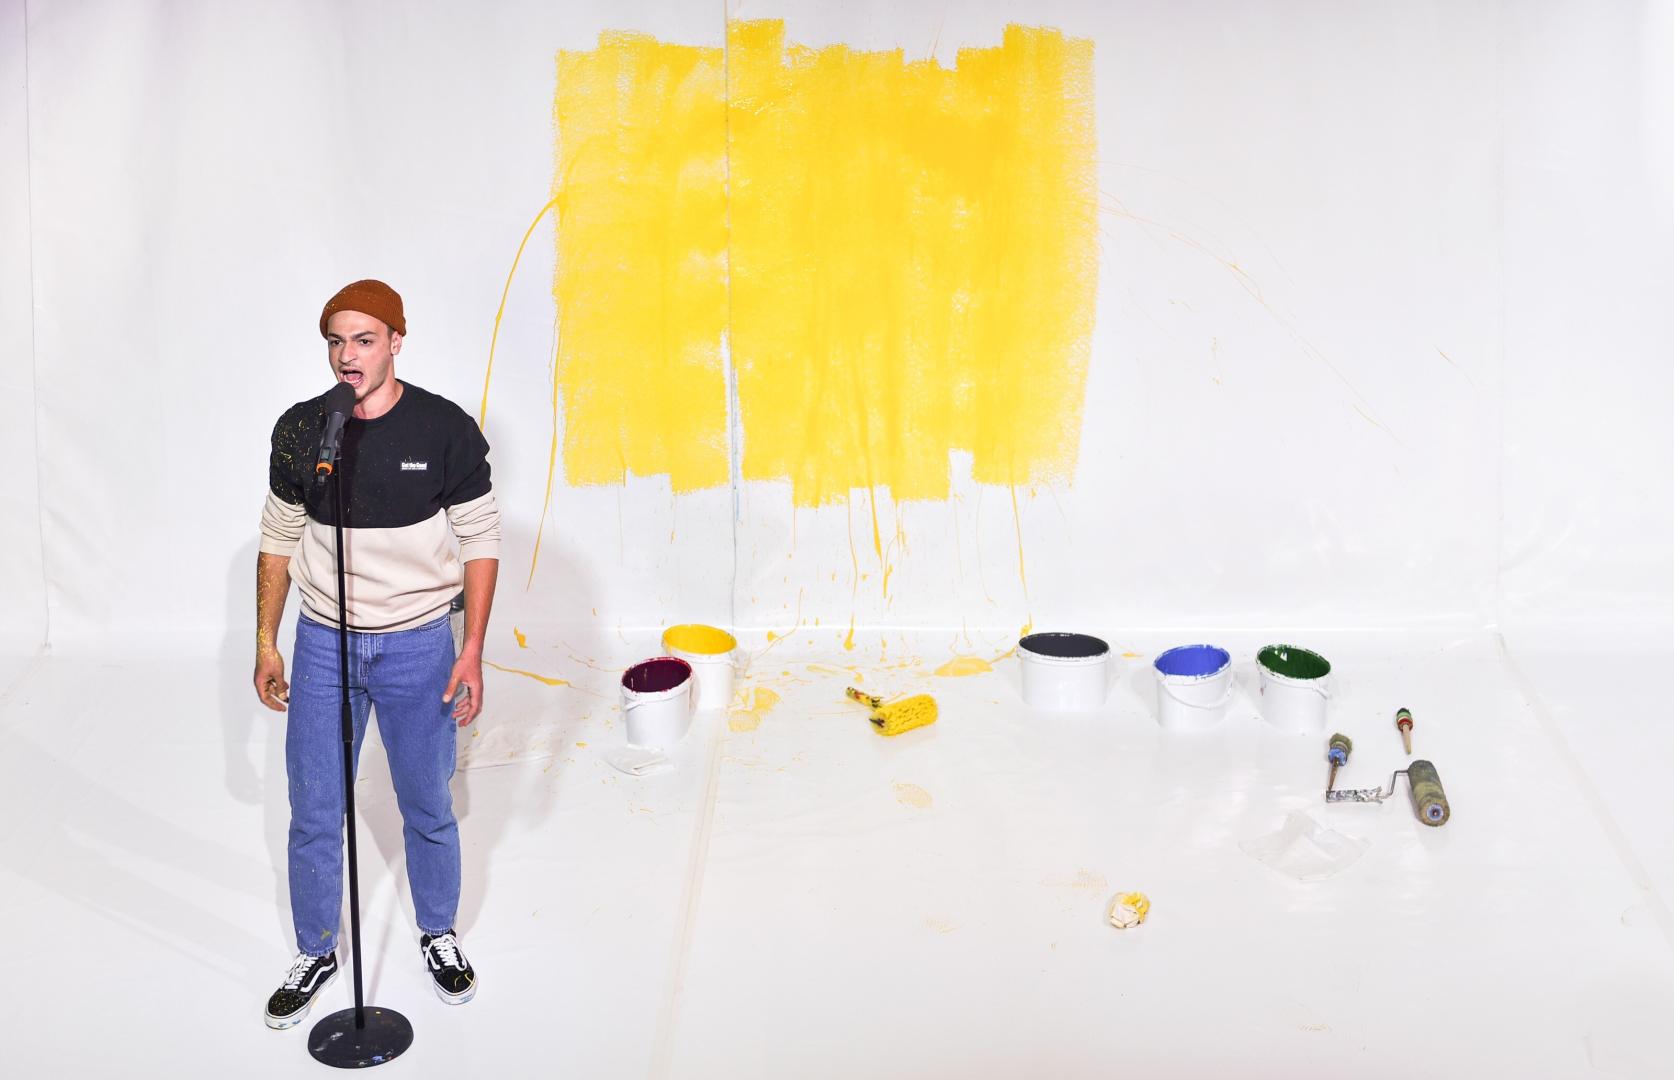 Schauspieler steht vor an einem Stehmikrofon vor einer weißen Wand, davor liegen Farbeimer und -rollen.